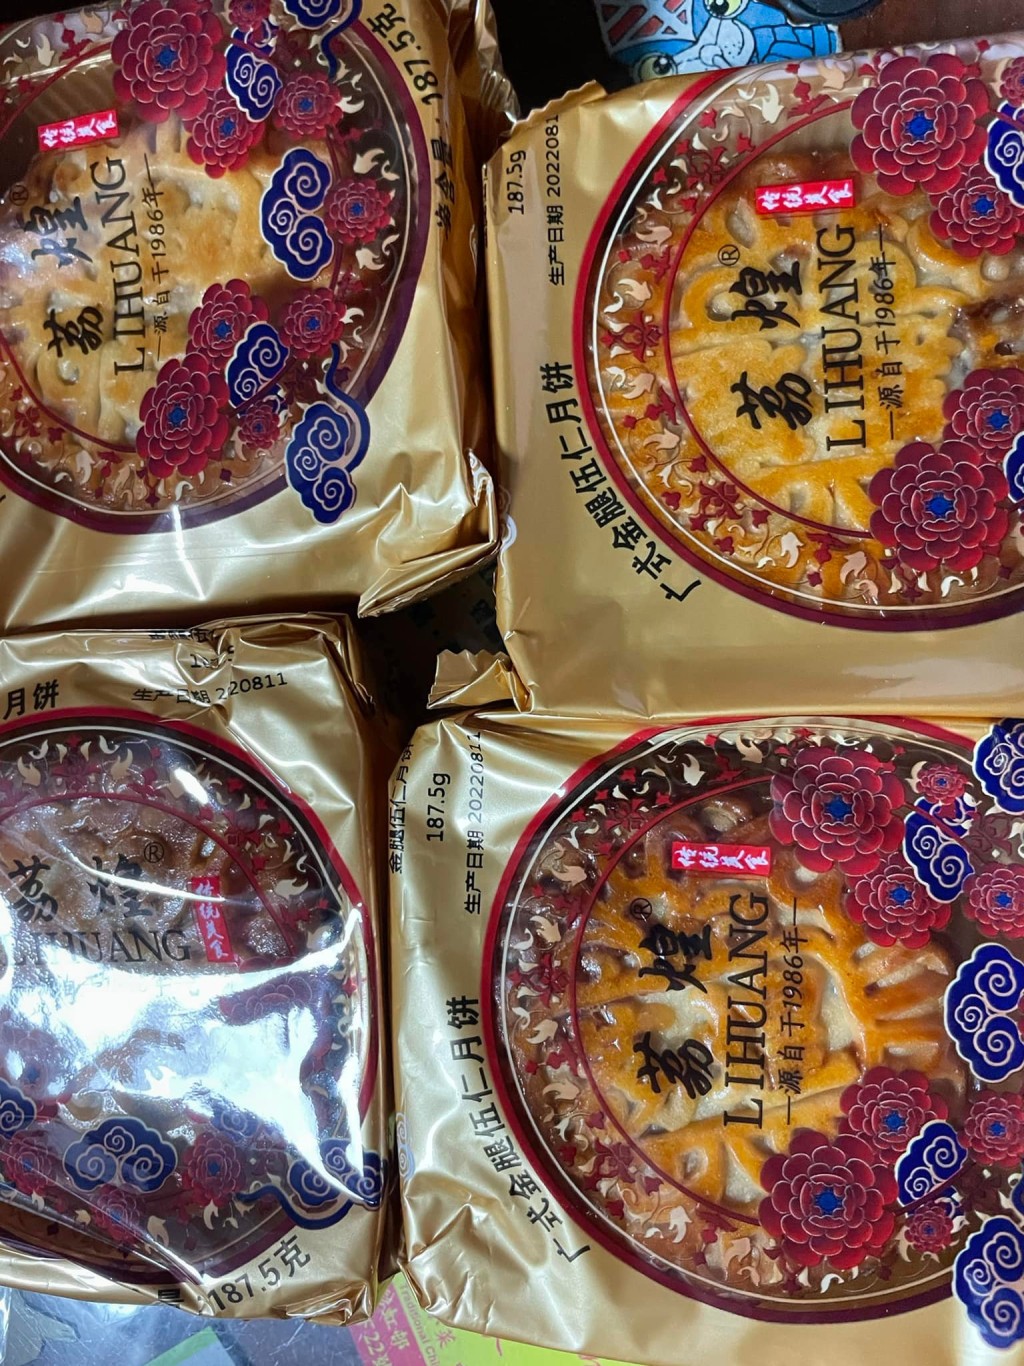 有港人分享老父從內地網購多達17公斤的月餅來港。「淘寶開心share」圖片